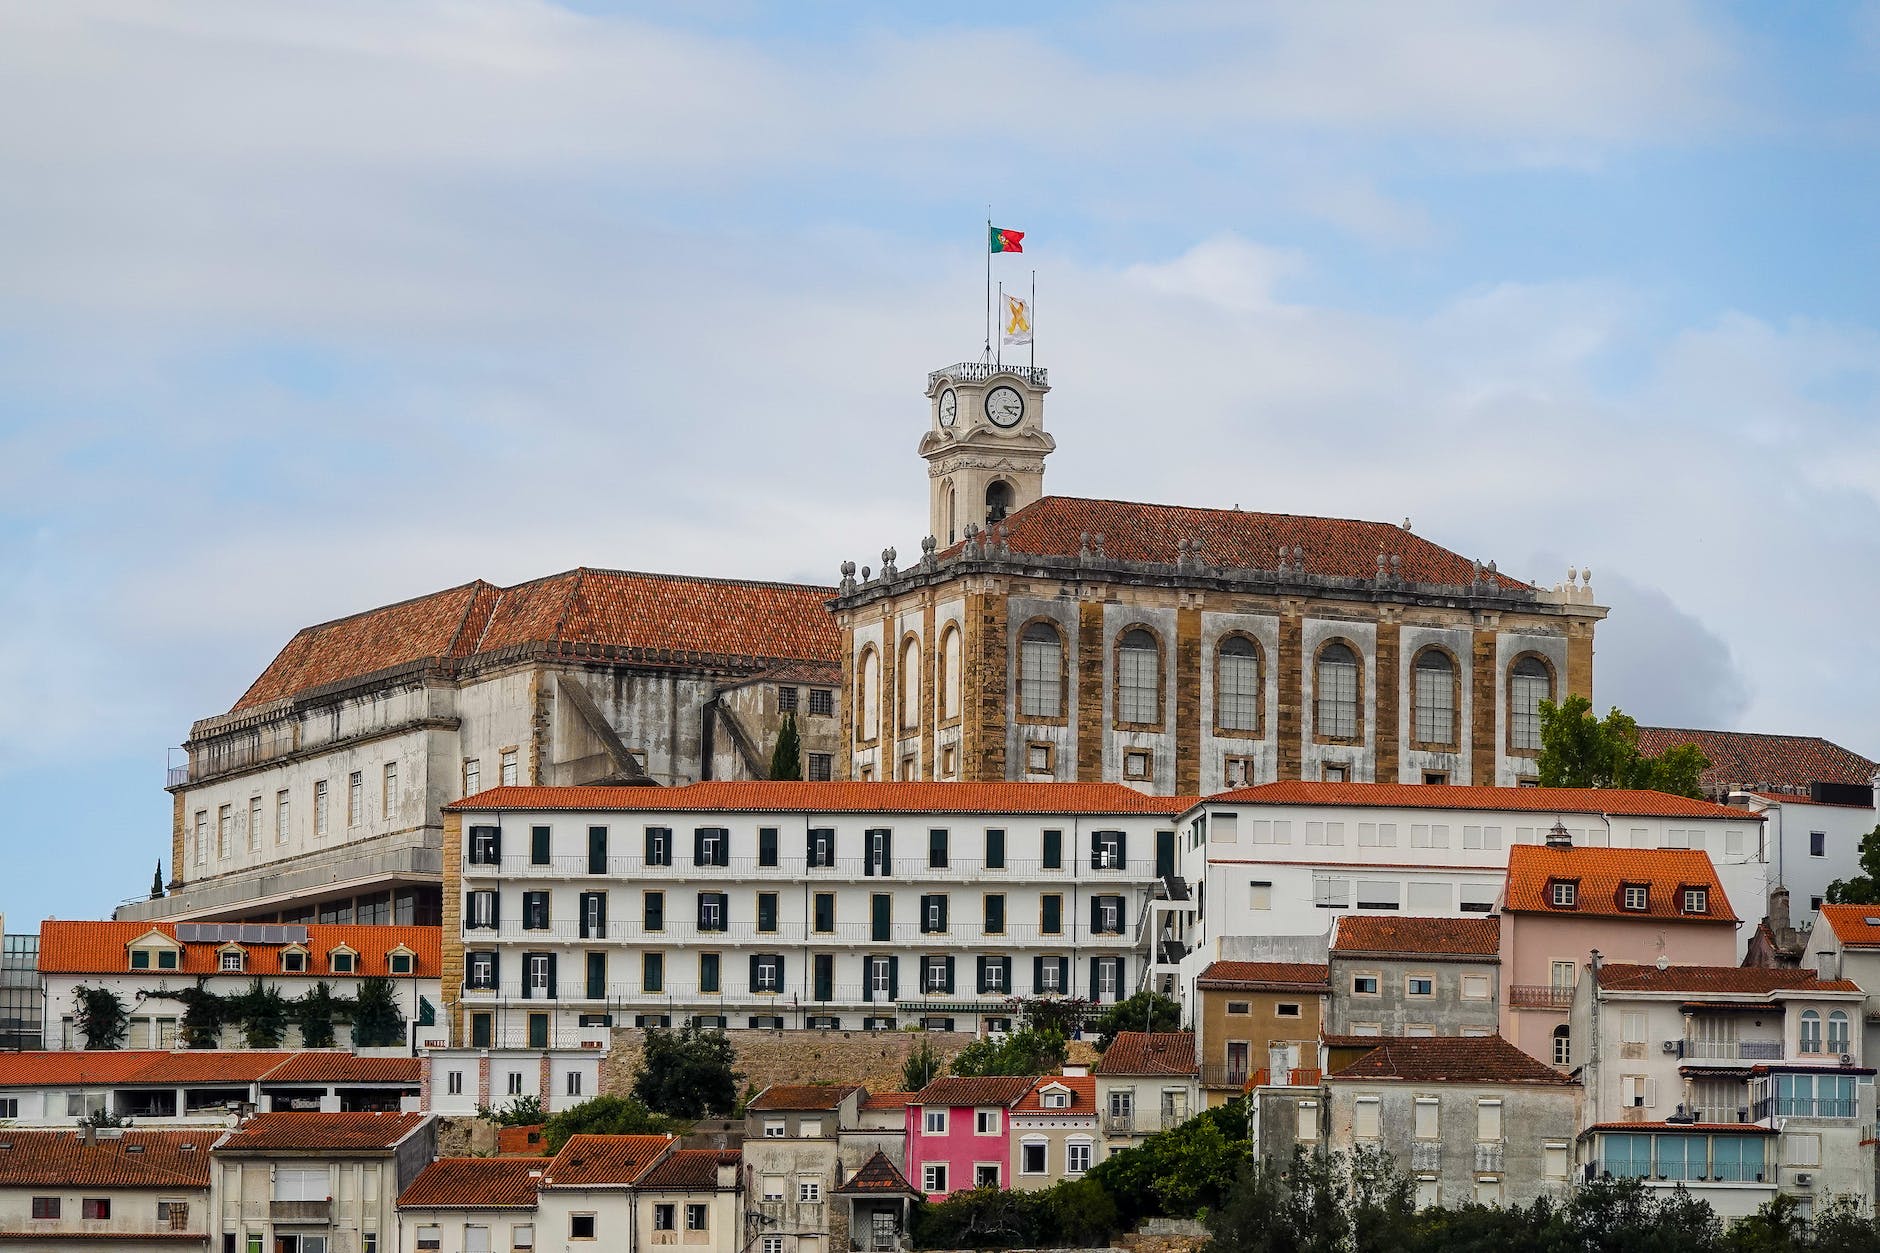 مبنى تاريخي مع علم البرتغال يلوح